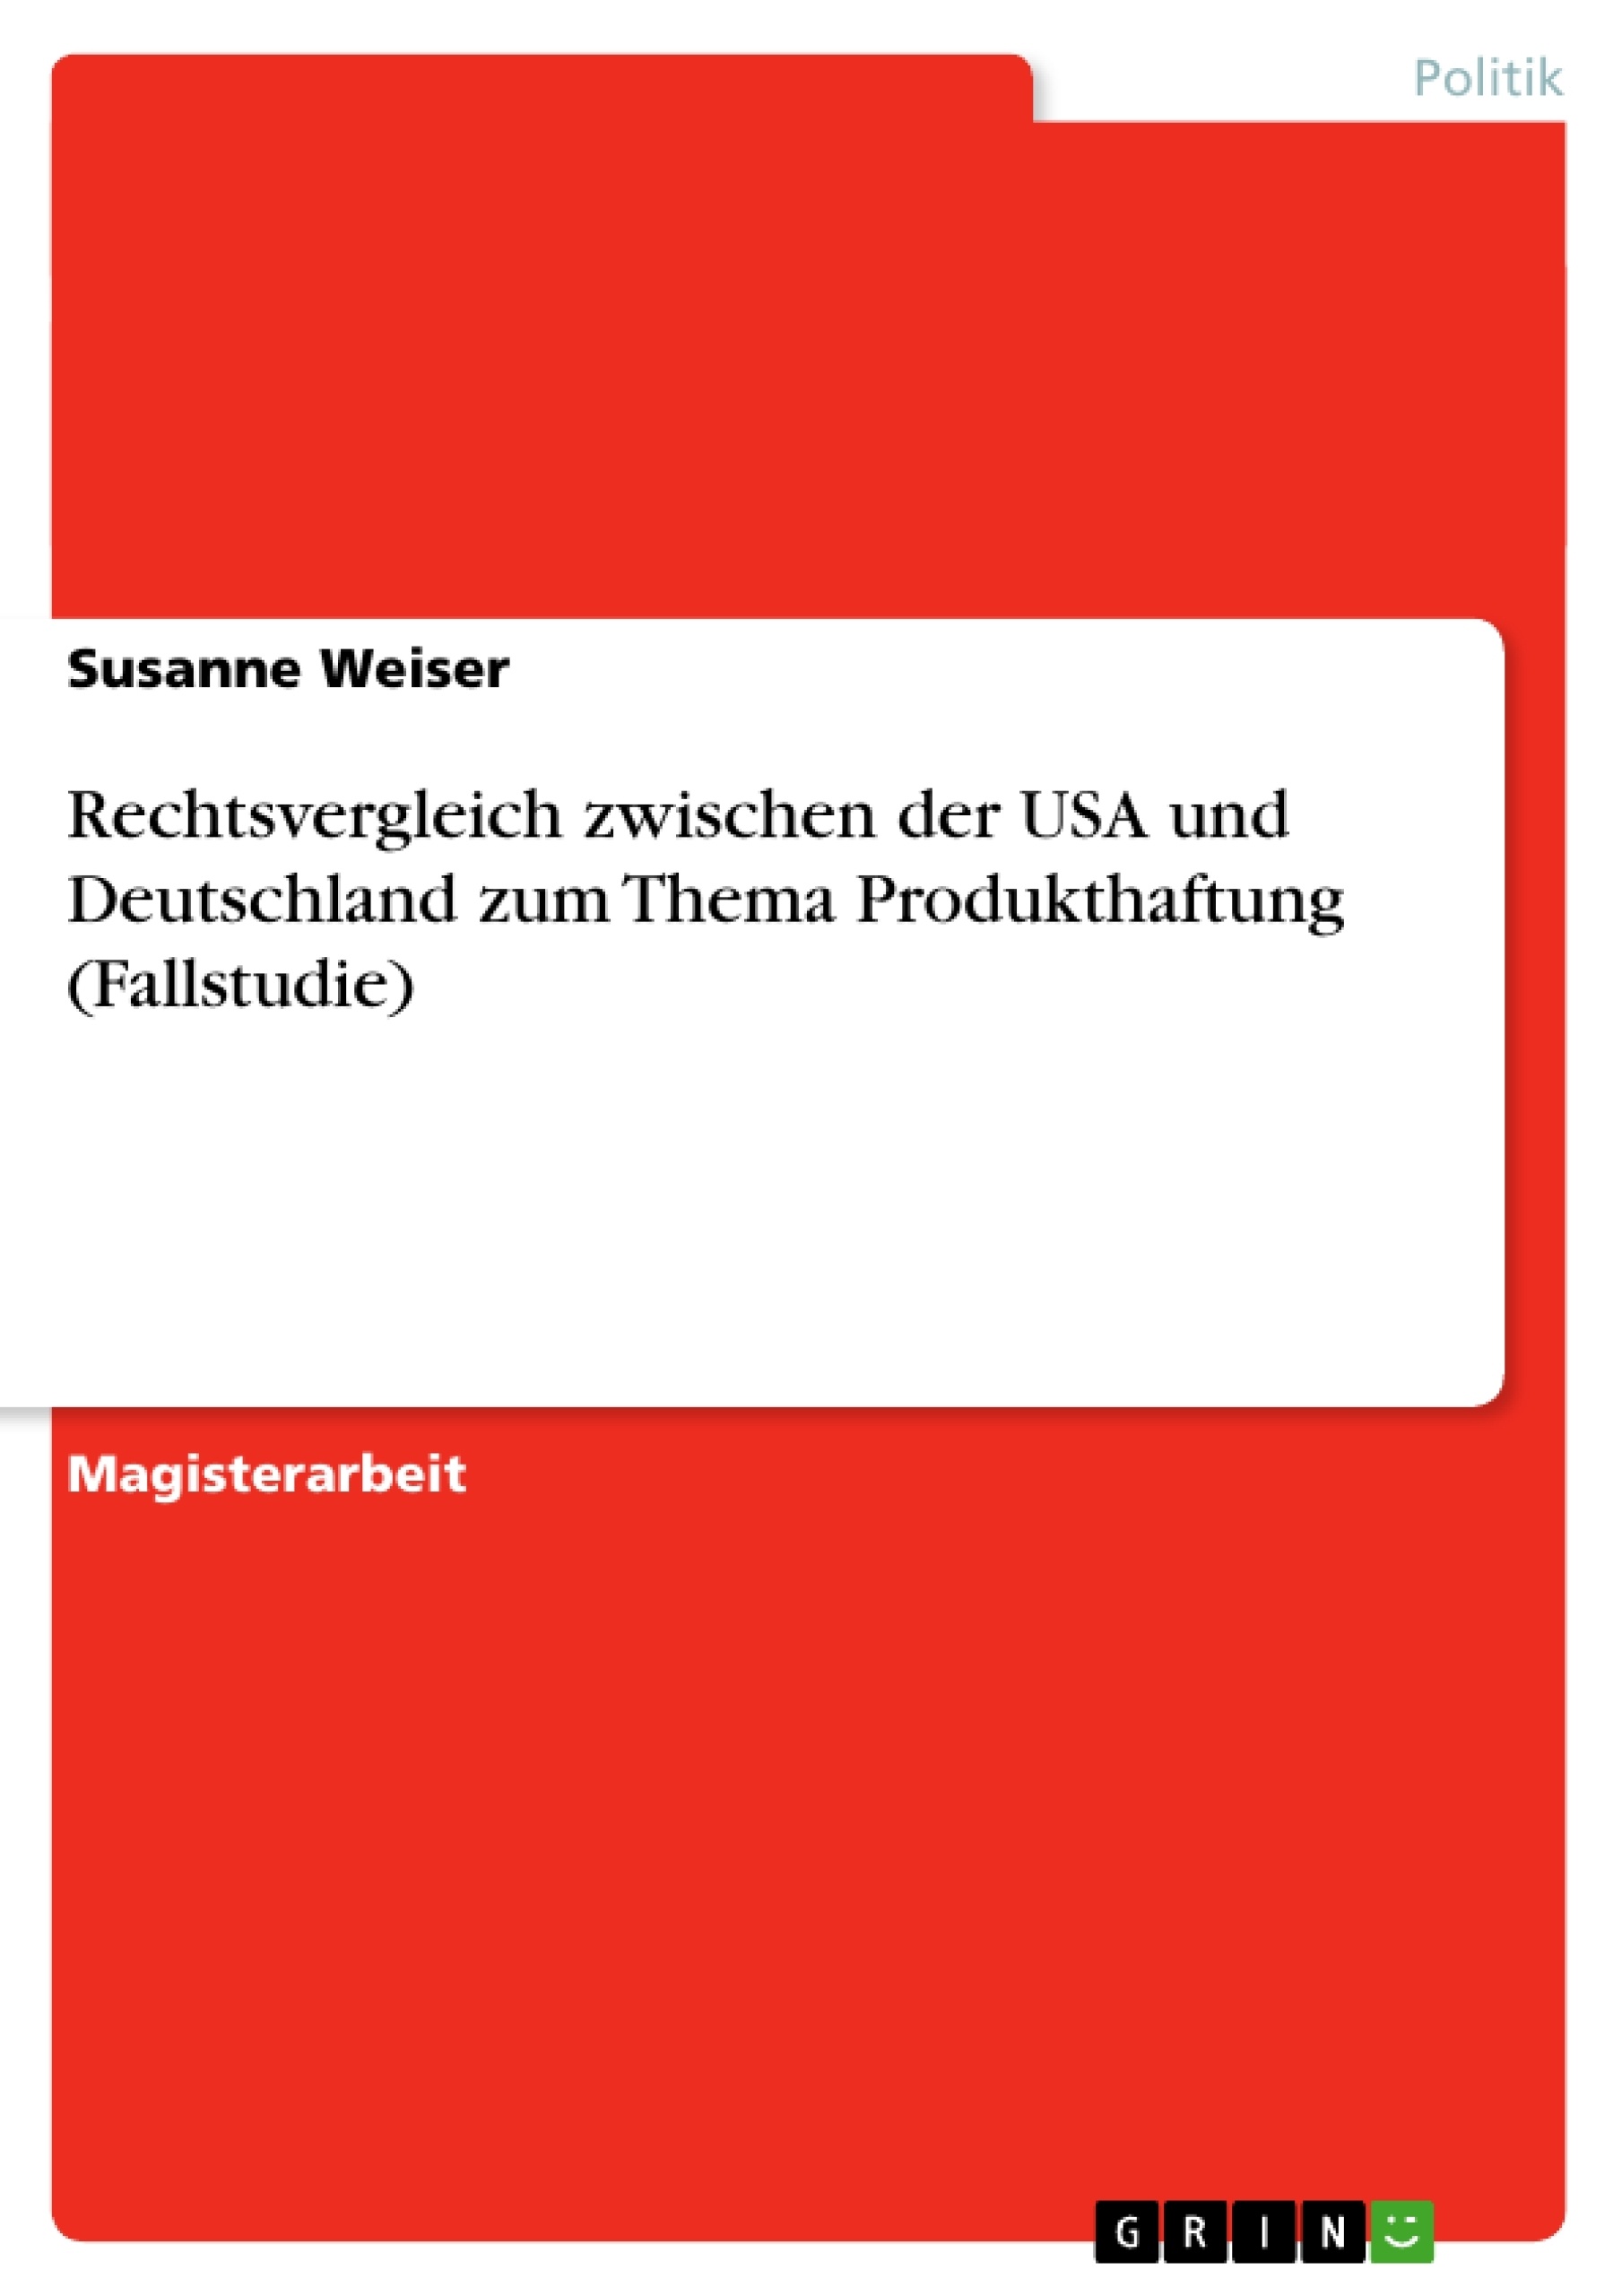 Título: Rechtsvergleich zwischen der USA und Deutschland zum Thema Produkthaftung (Fallstudie)